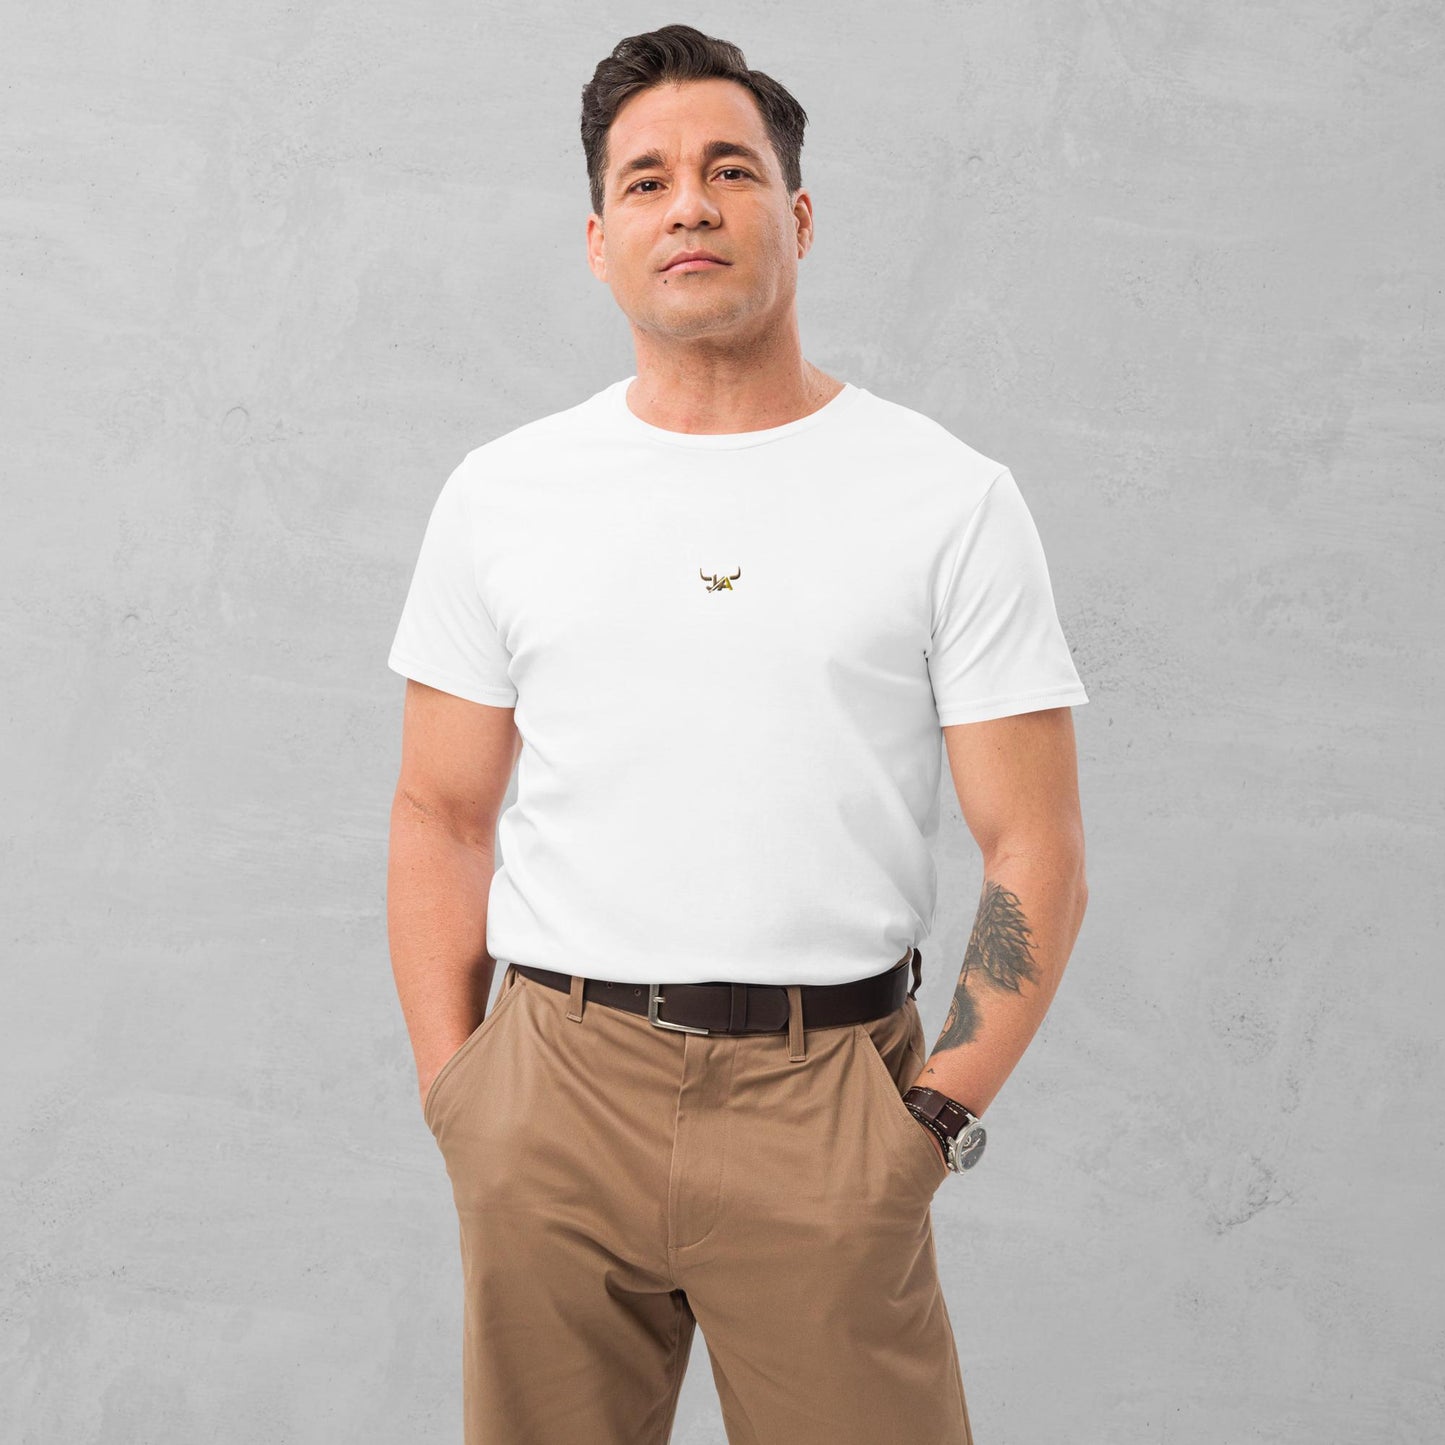 J.A Men's premium cotton t-shirt